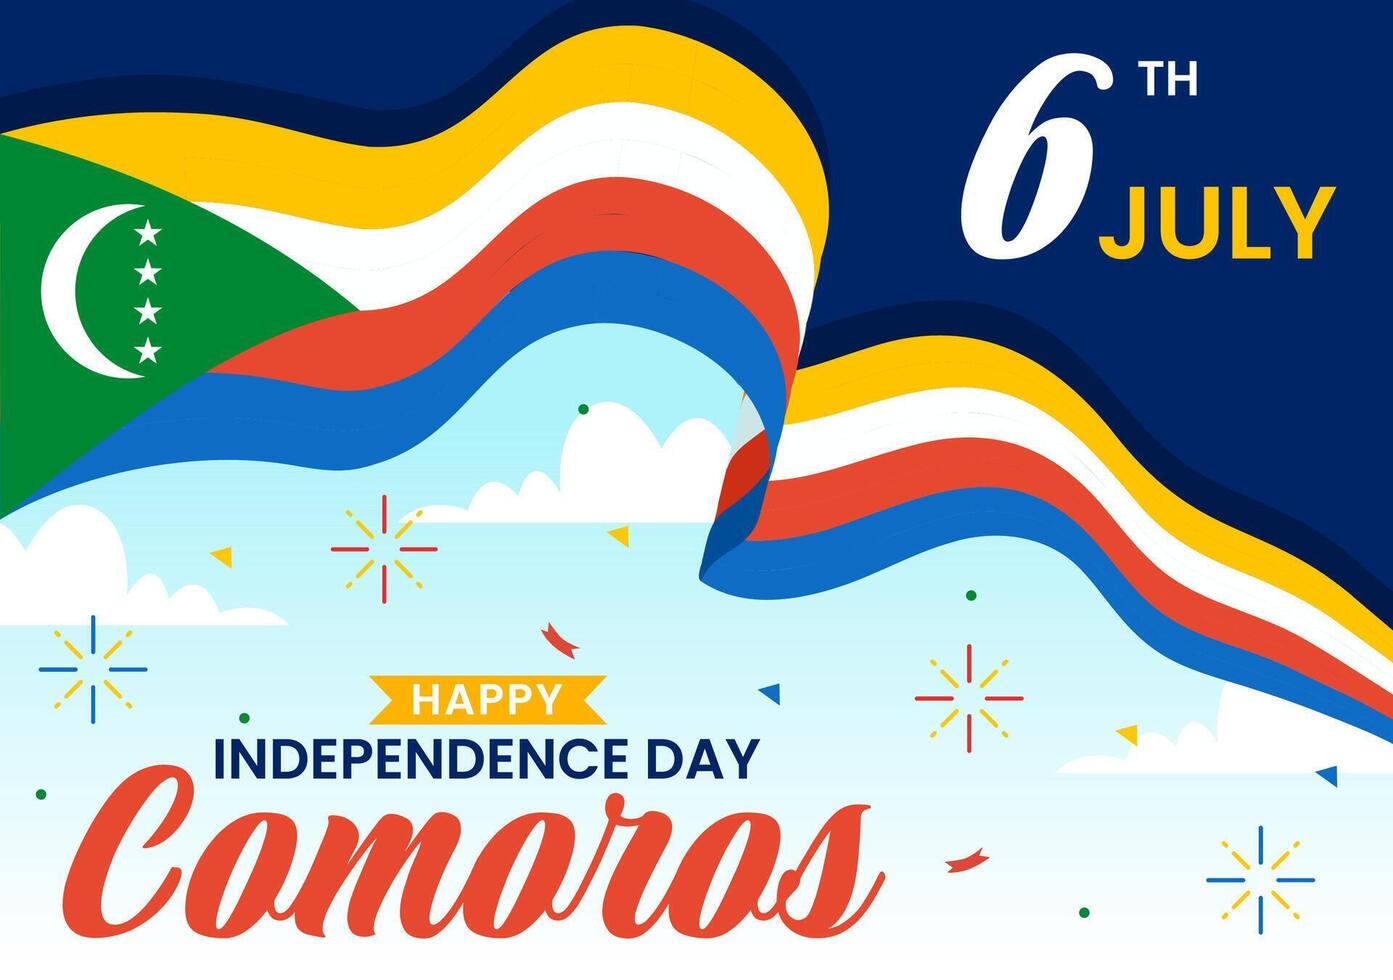 contento comoras independencia día ilustración en 6 6 julio con comorano ondulación bandera en nacional fiesta plano dibujos animados antecedentes diseño vector